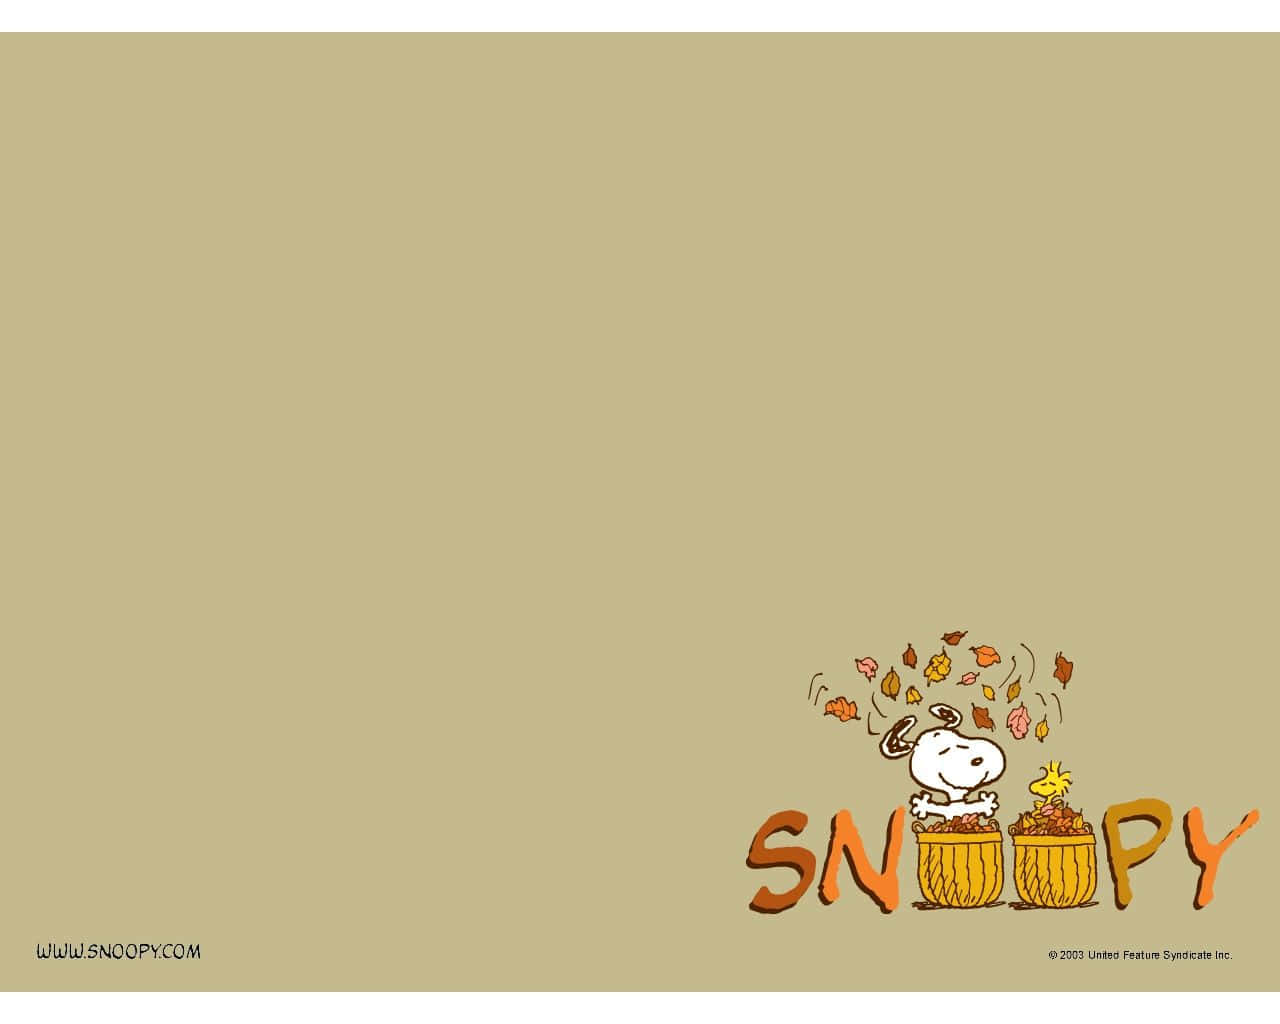 Snoopyfeiert Thanksgiving. Wallpaper